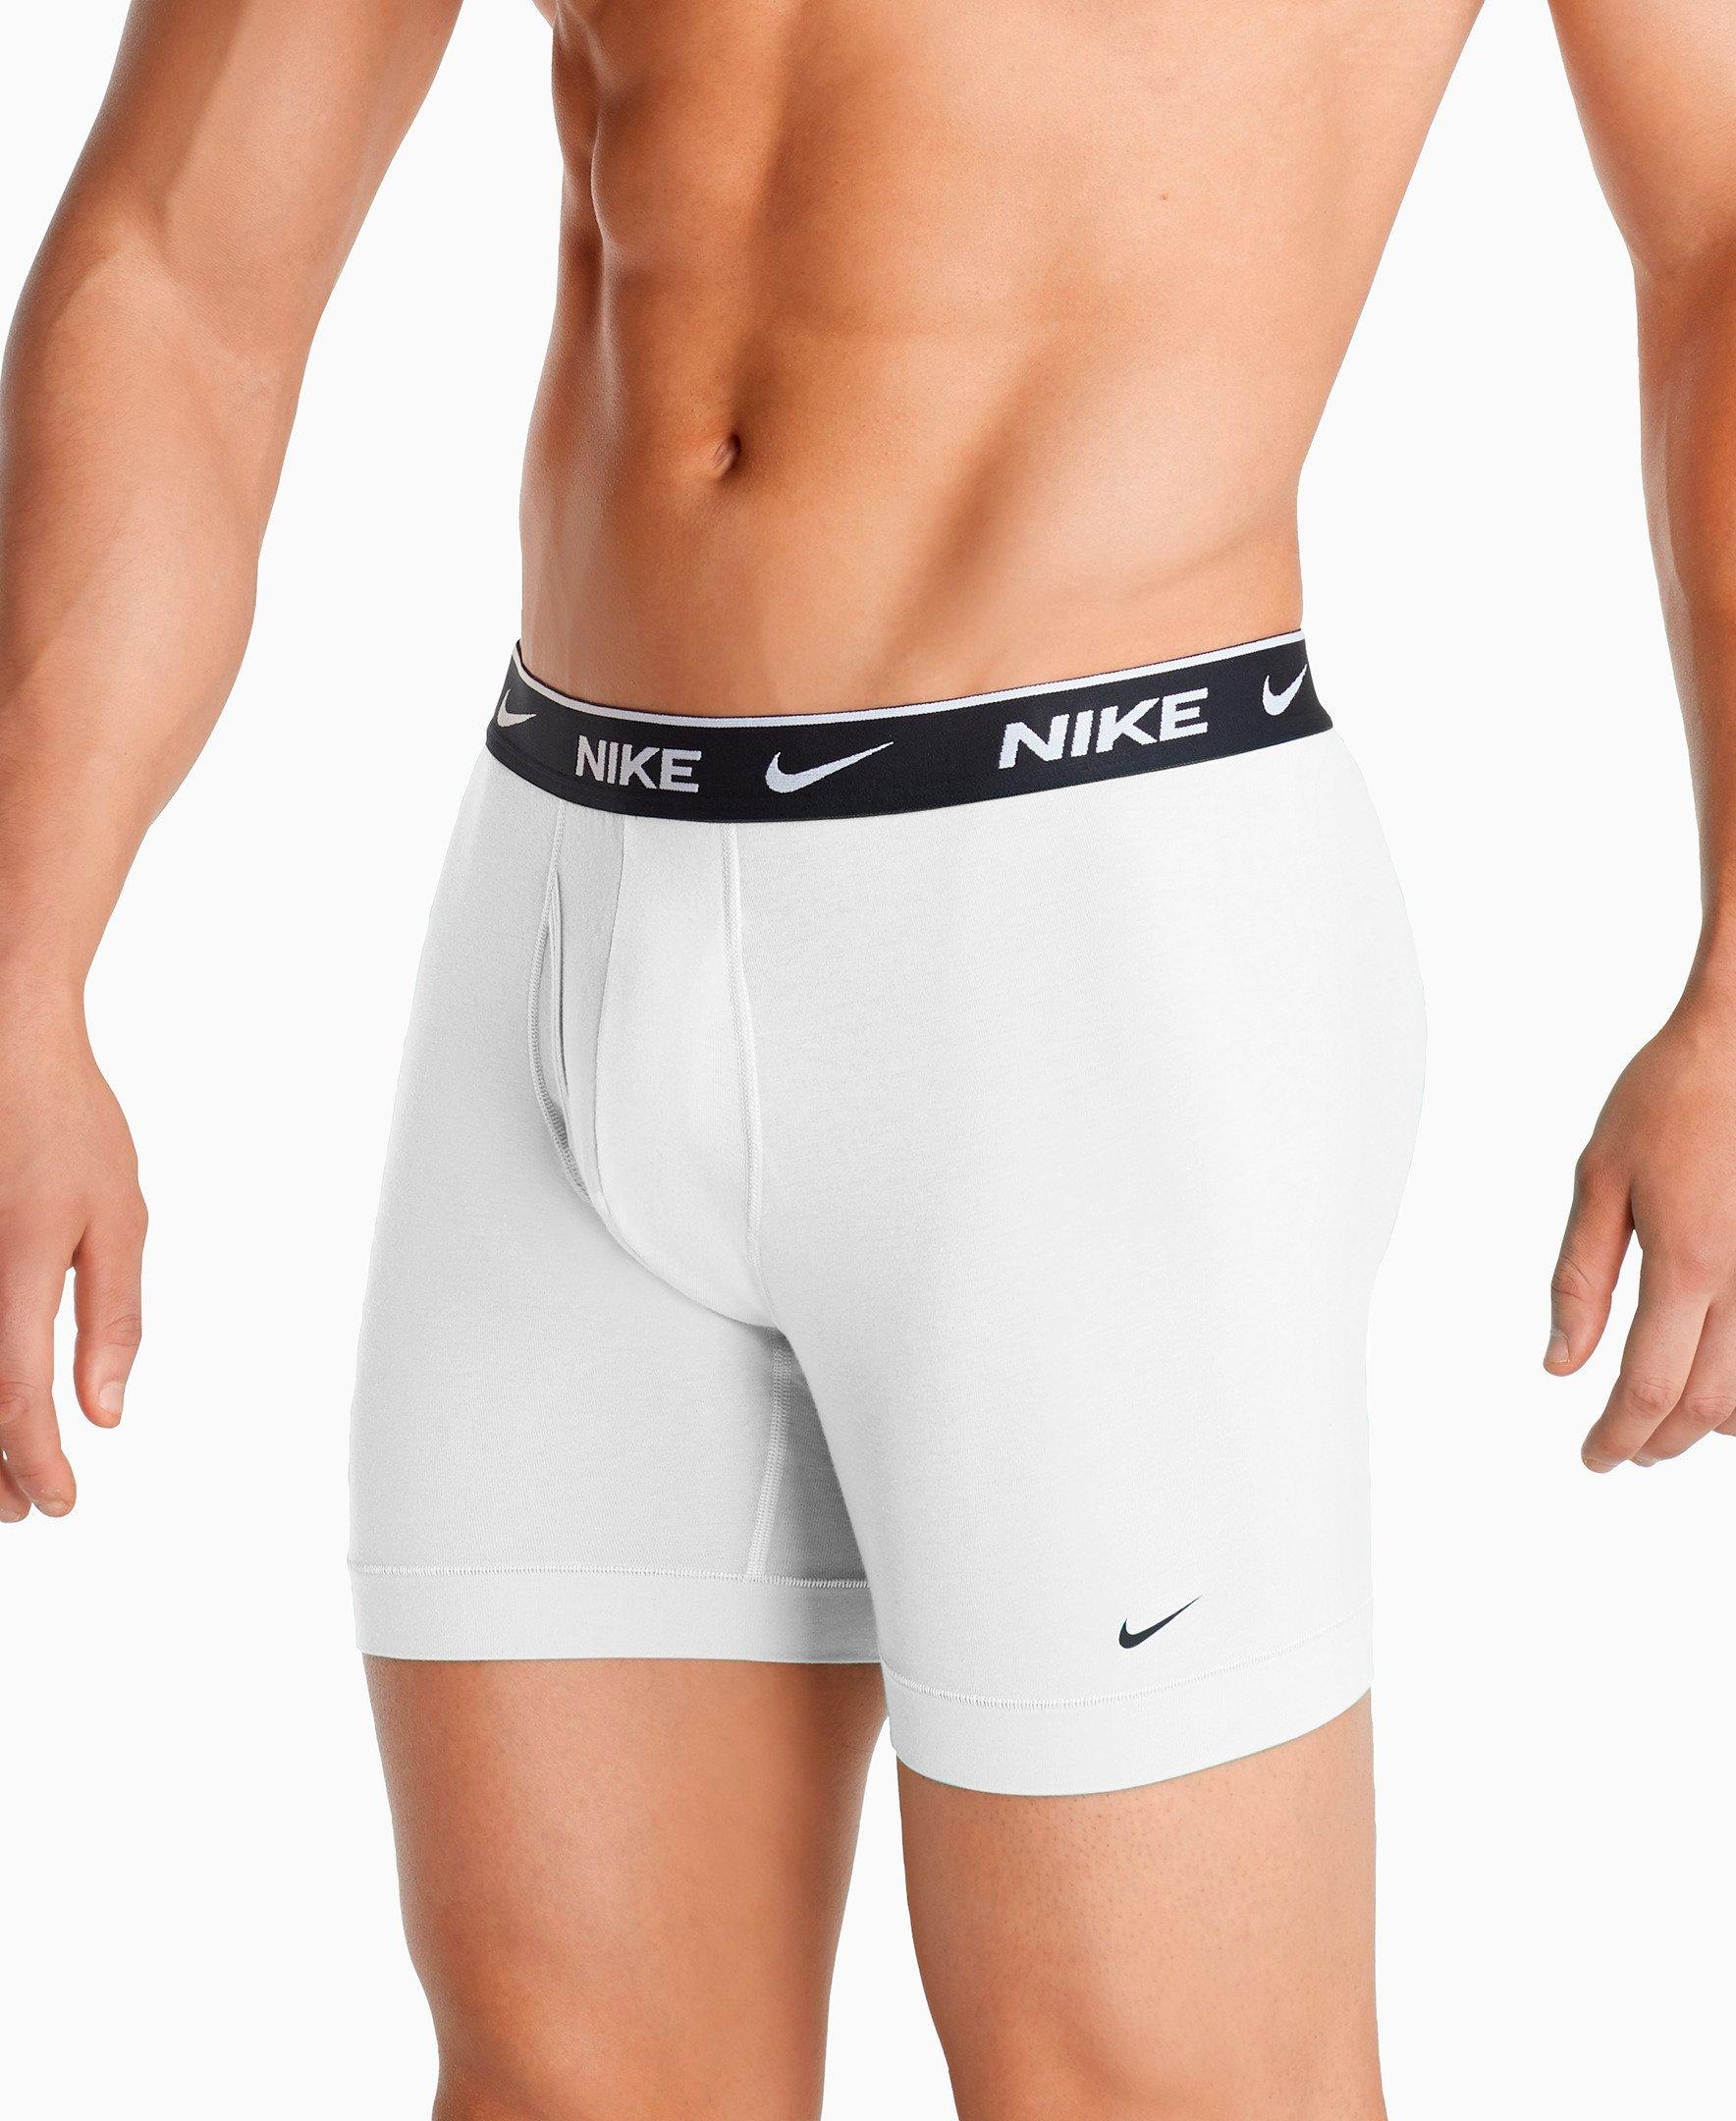 Men's Nike Underwear Everyday Cotton 